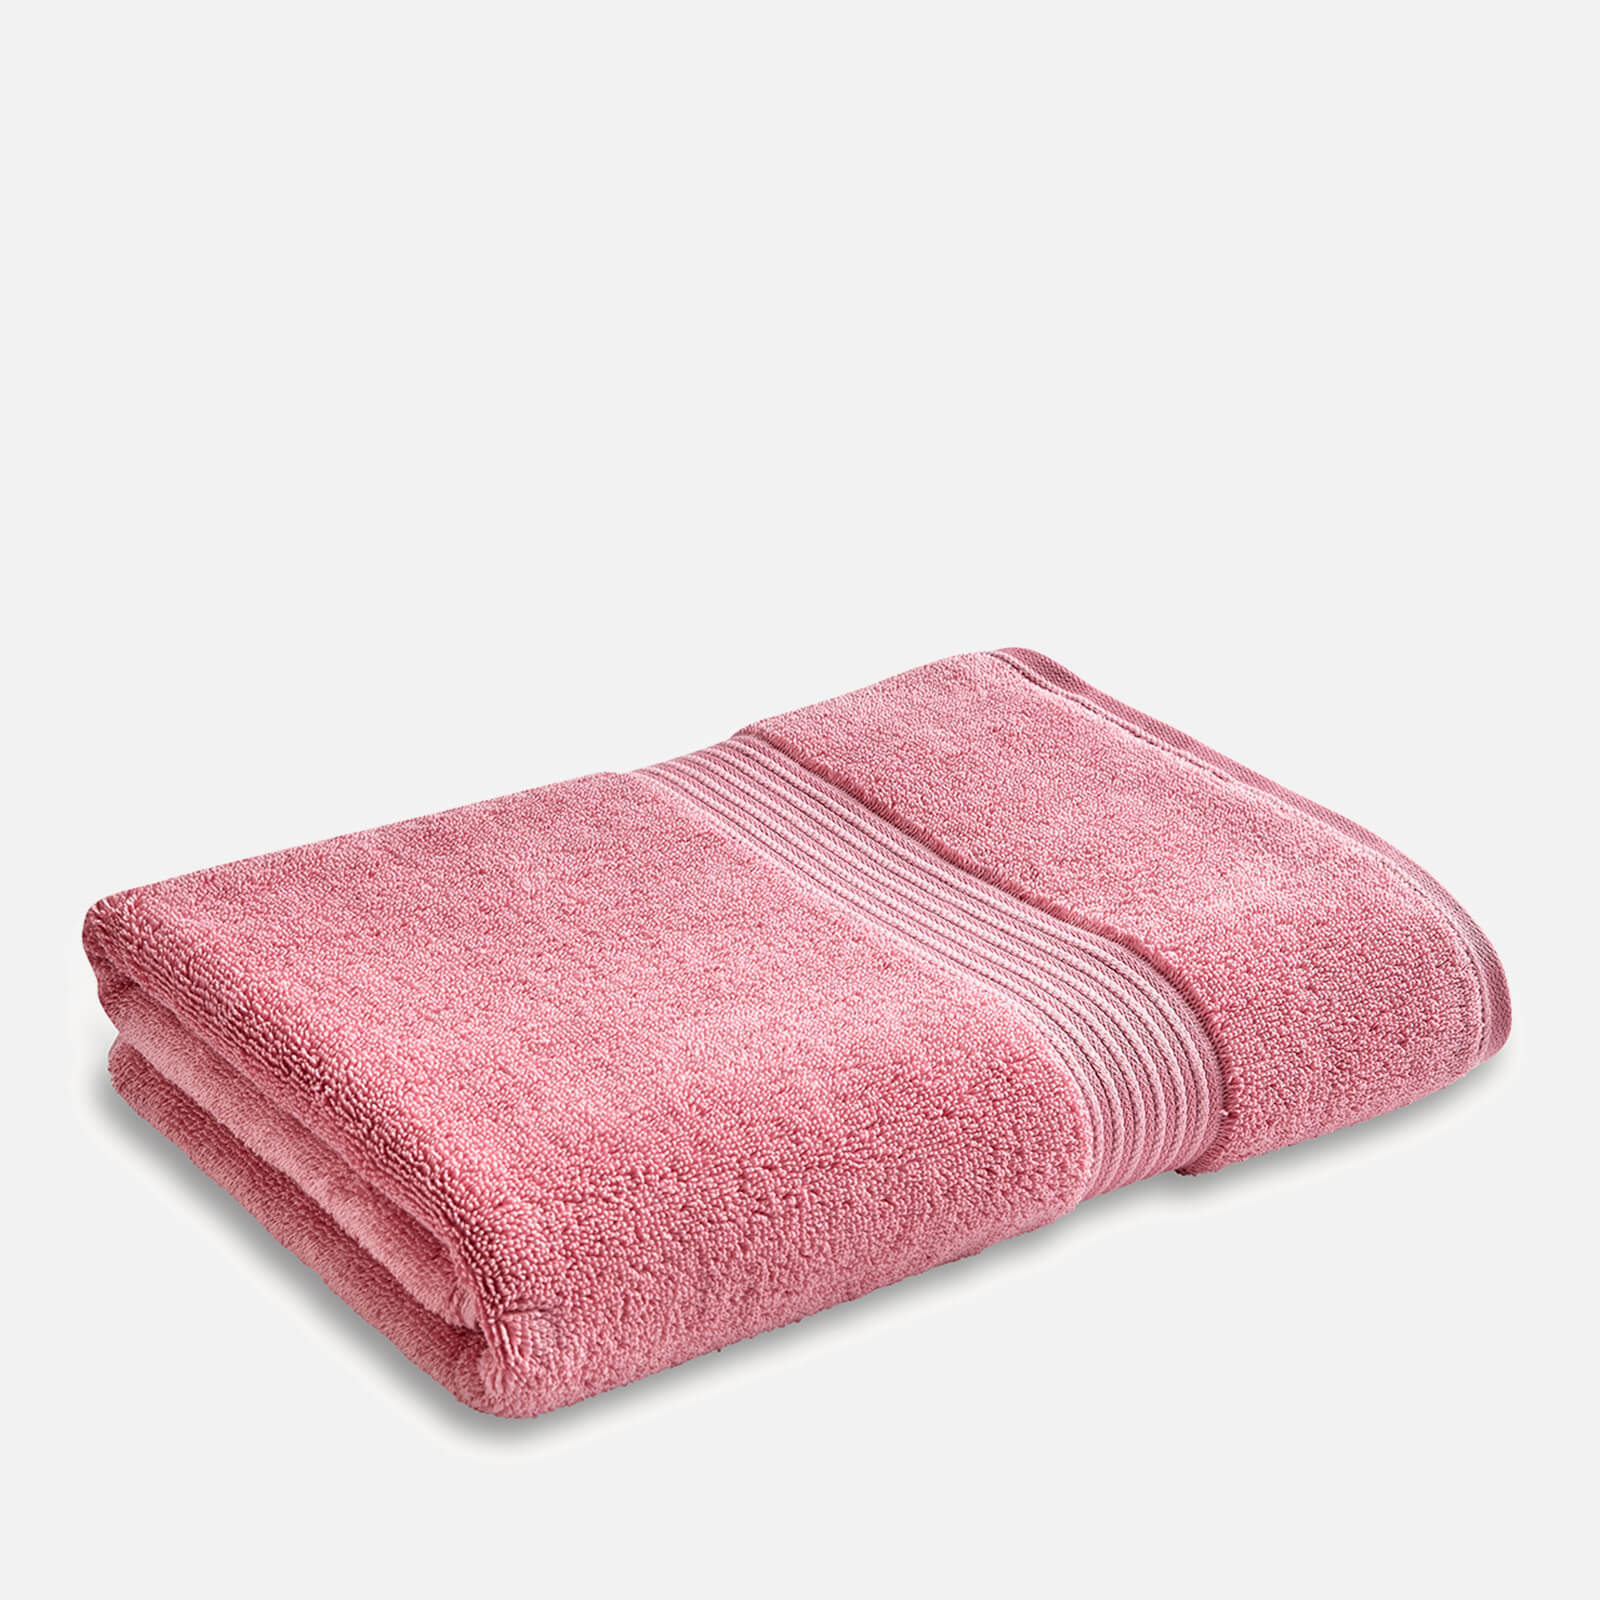 Christy Supreme Super Soft Towel - Blush - Set of 2